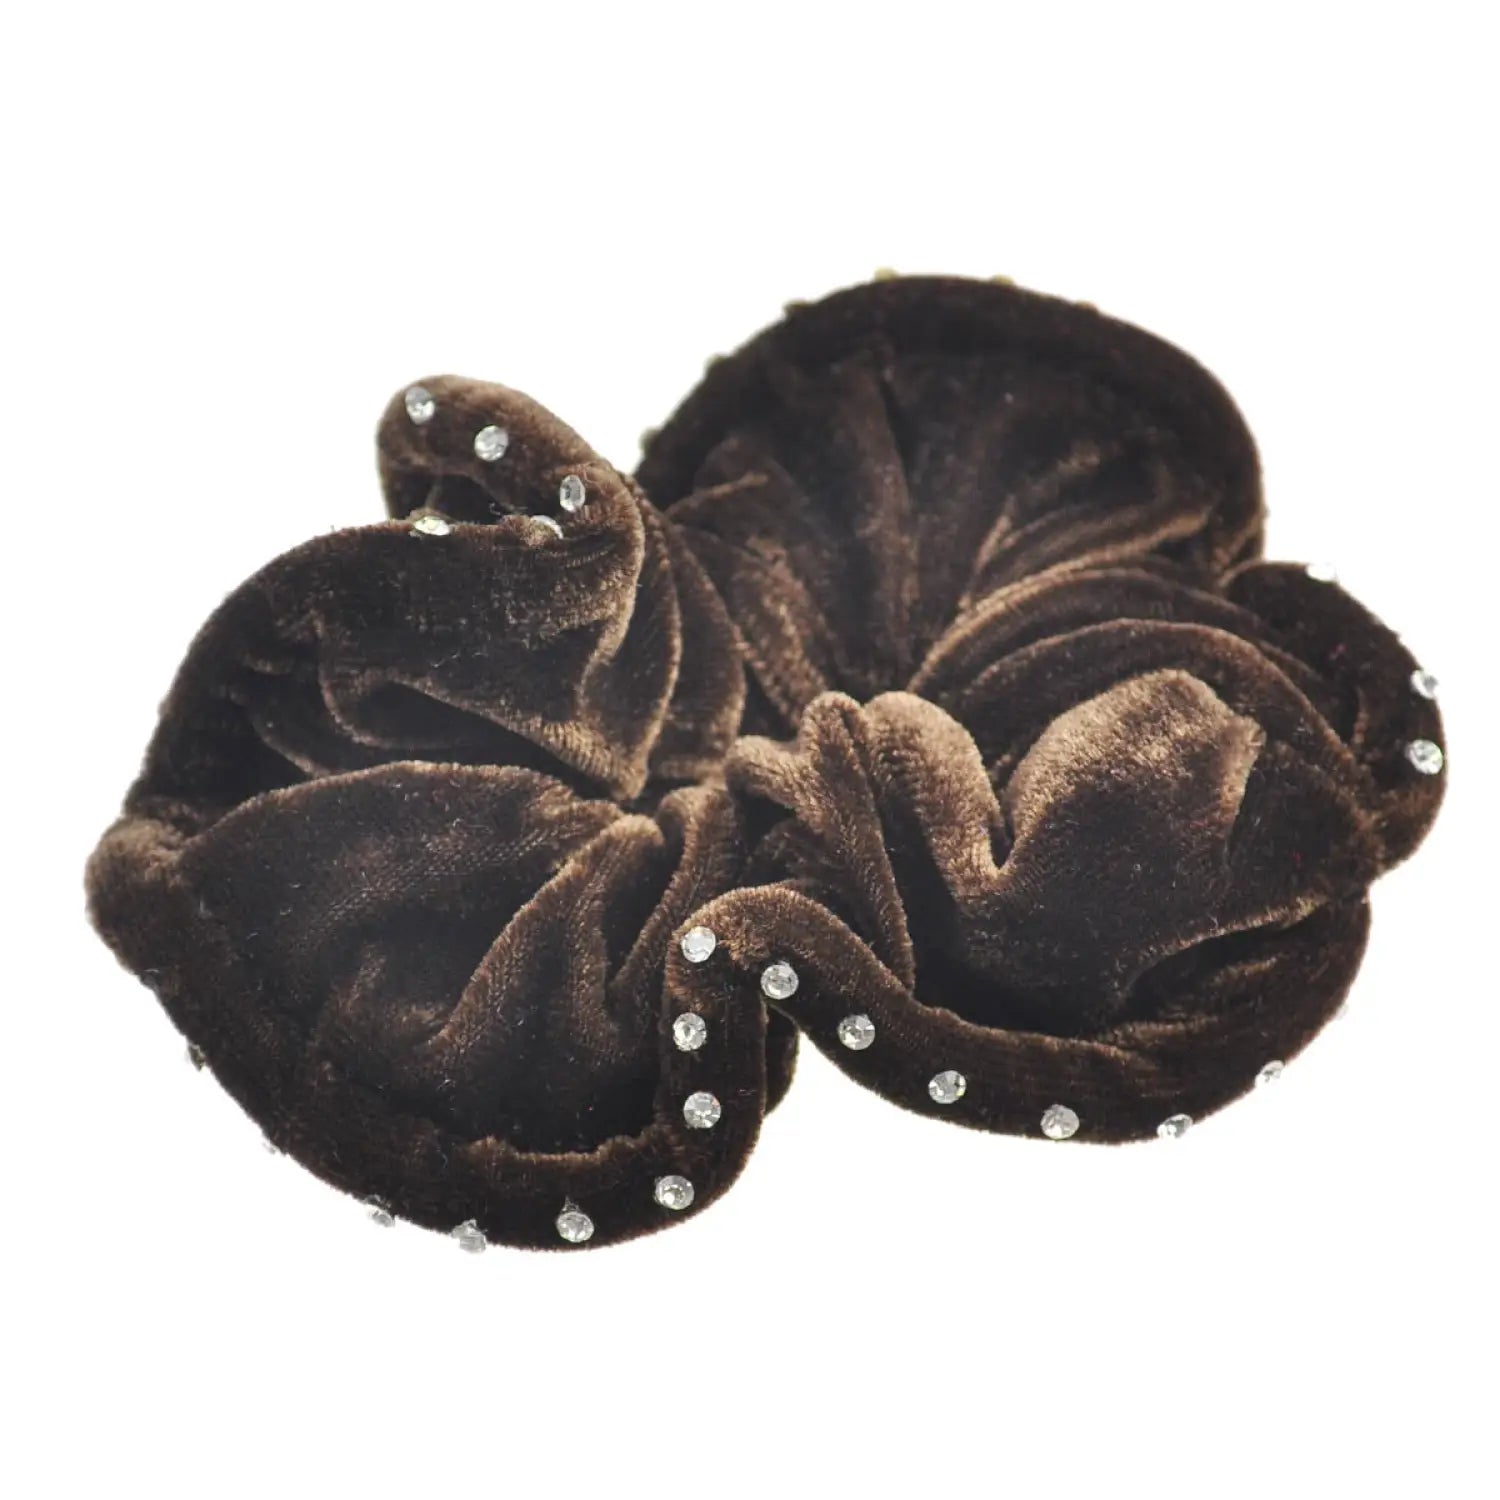 Brown fur hair scrunchies with rhinestones, Large Rhinestone Velvet Hair Scrunchies, 2pcs.